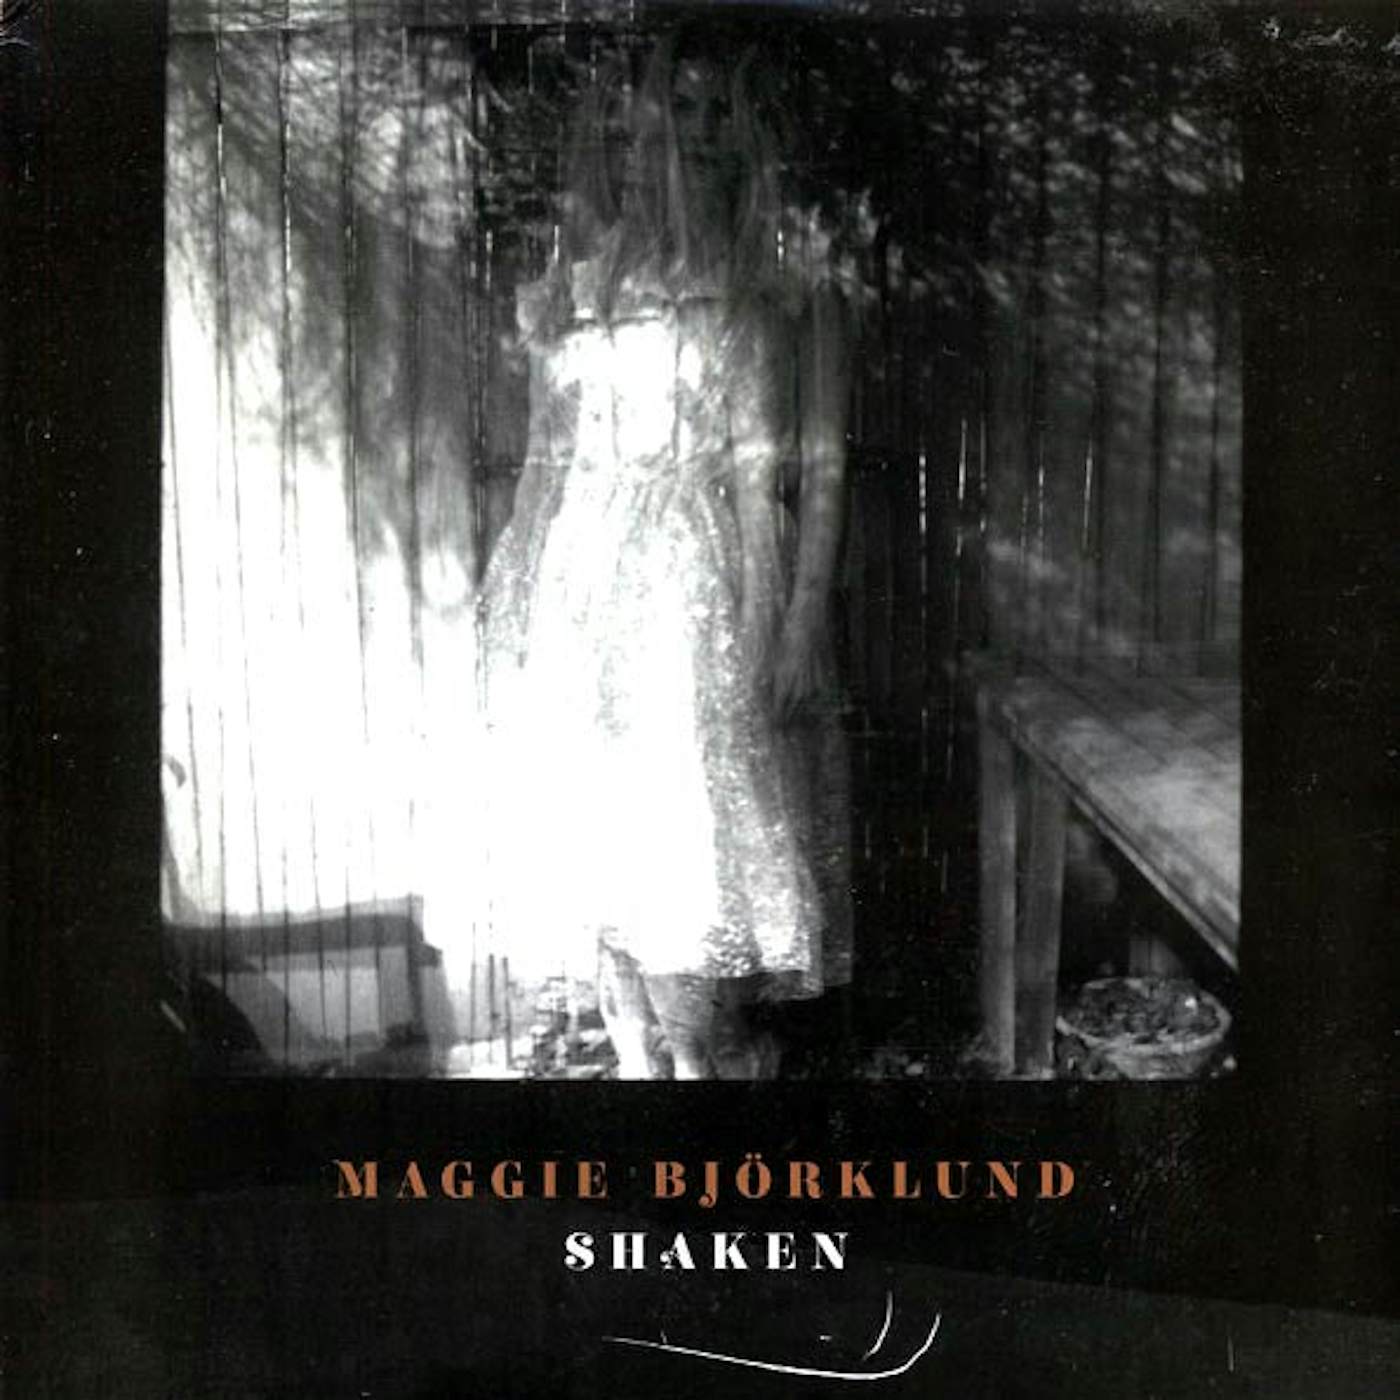 Maggie Bjorklund  LP -  Shaken (incl. mp3) (Vinyl)